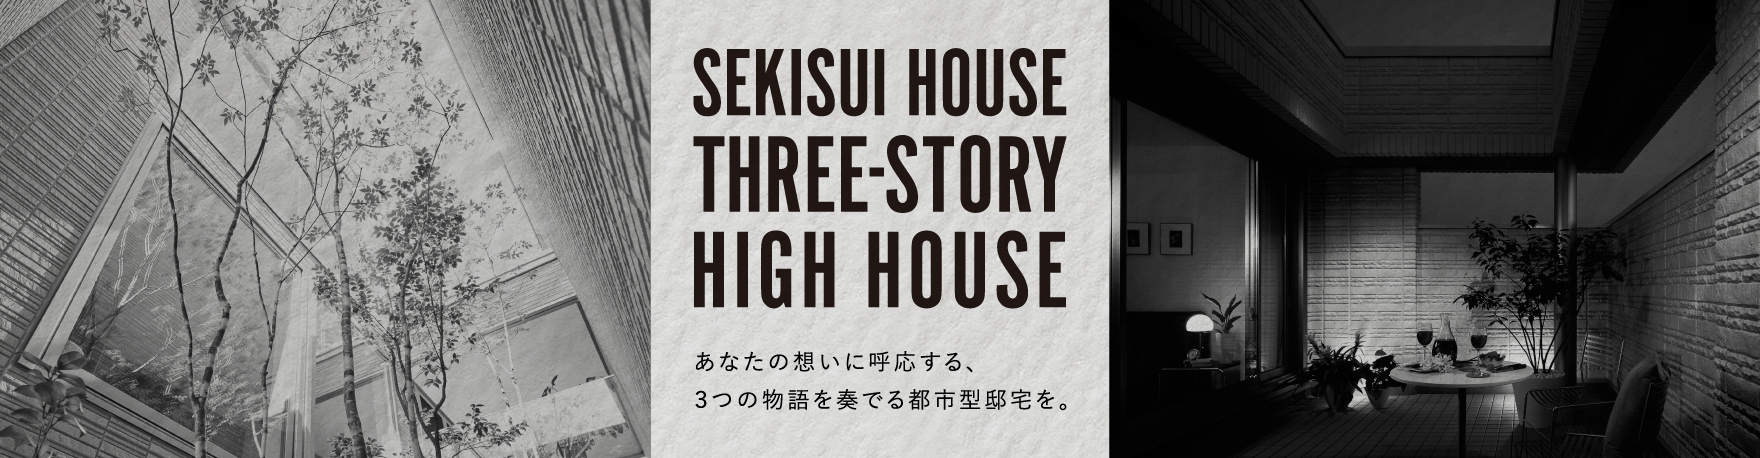 SEKISUI HOUSE
  THREE-STORY
  HIGH HOUSE
  あなたの想いに呼応する、3つの物語を奏でる都市型邸宅を。